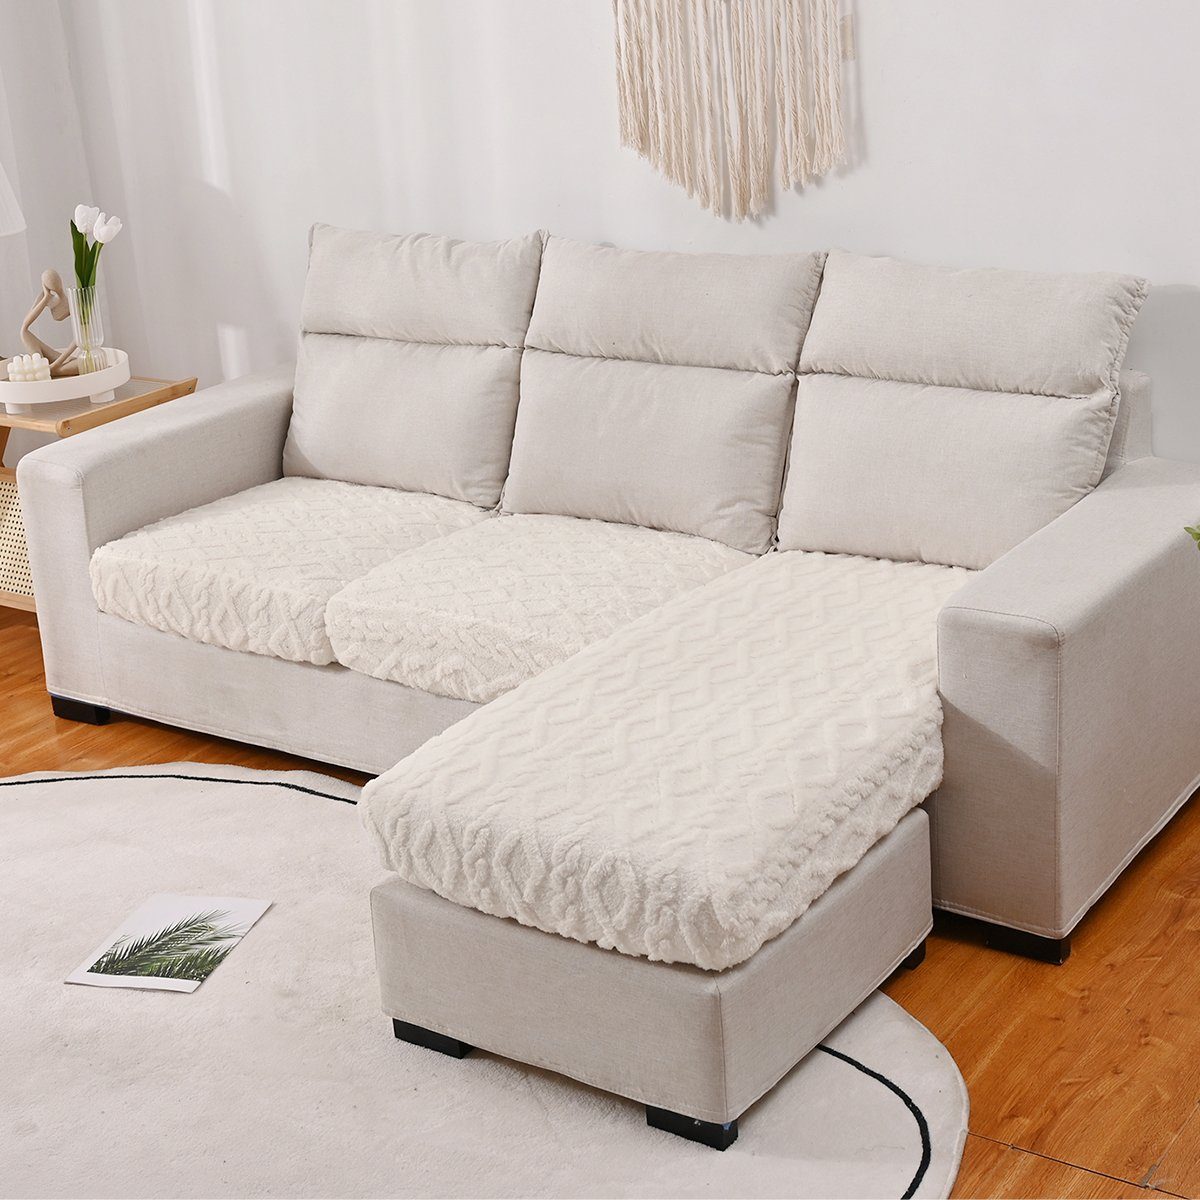 Sofahusse, HOMEIDEAS, Sofabezug L Form elastisch, Couch überzug Beige